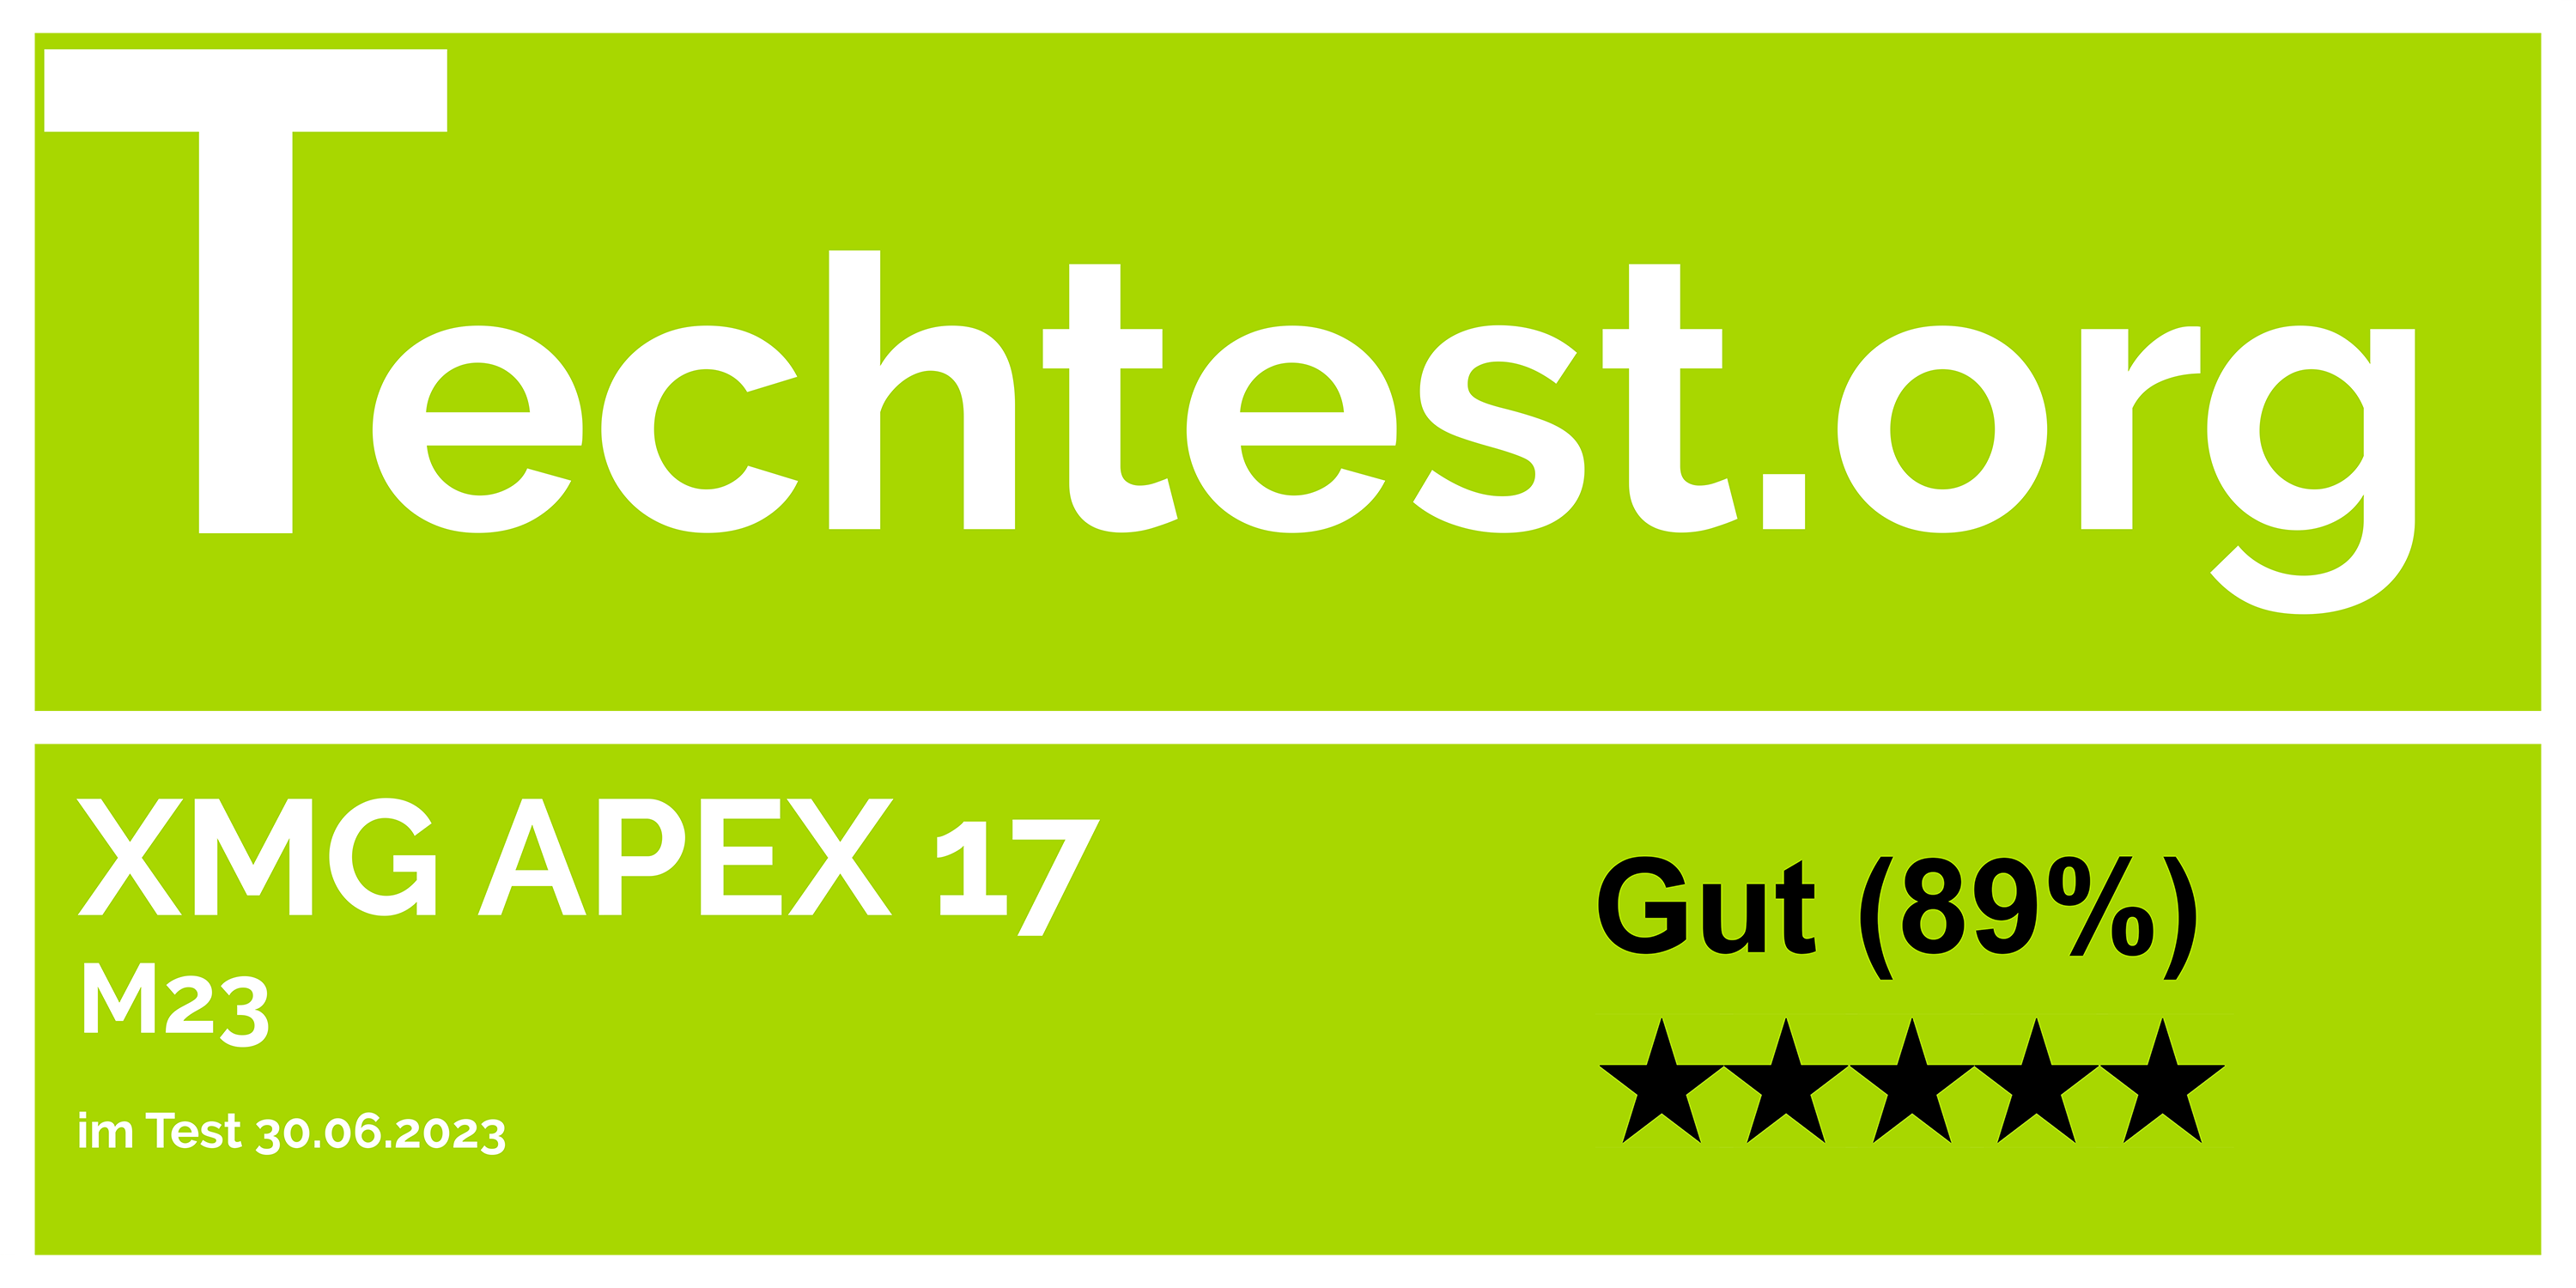 Techtest.org, Gut (89%)